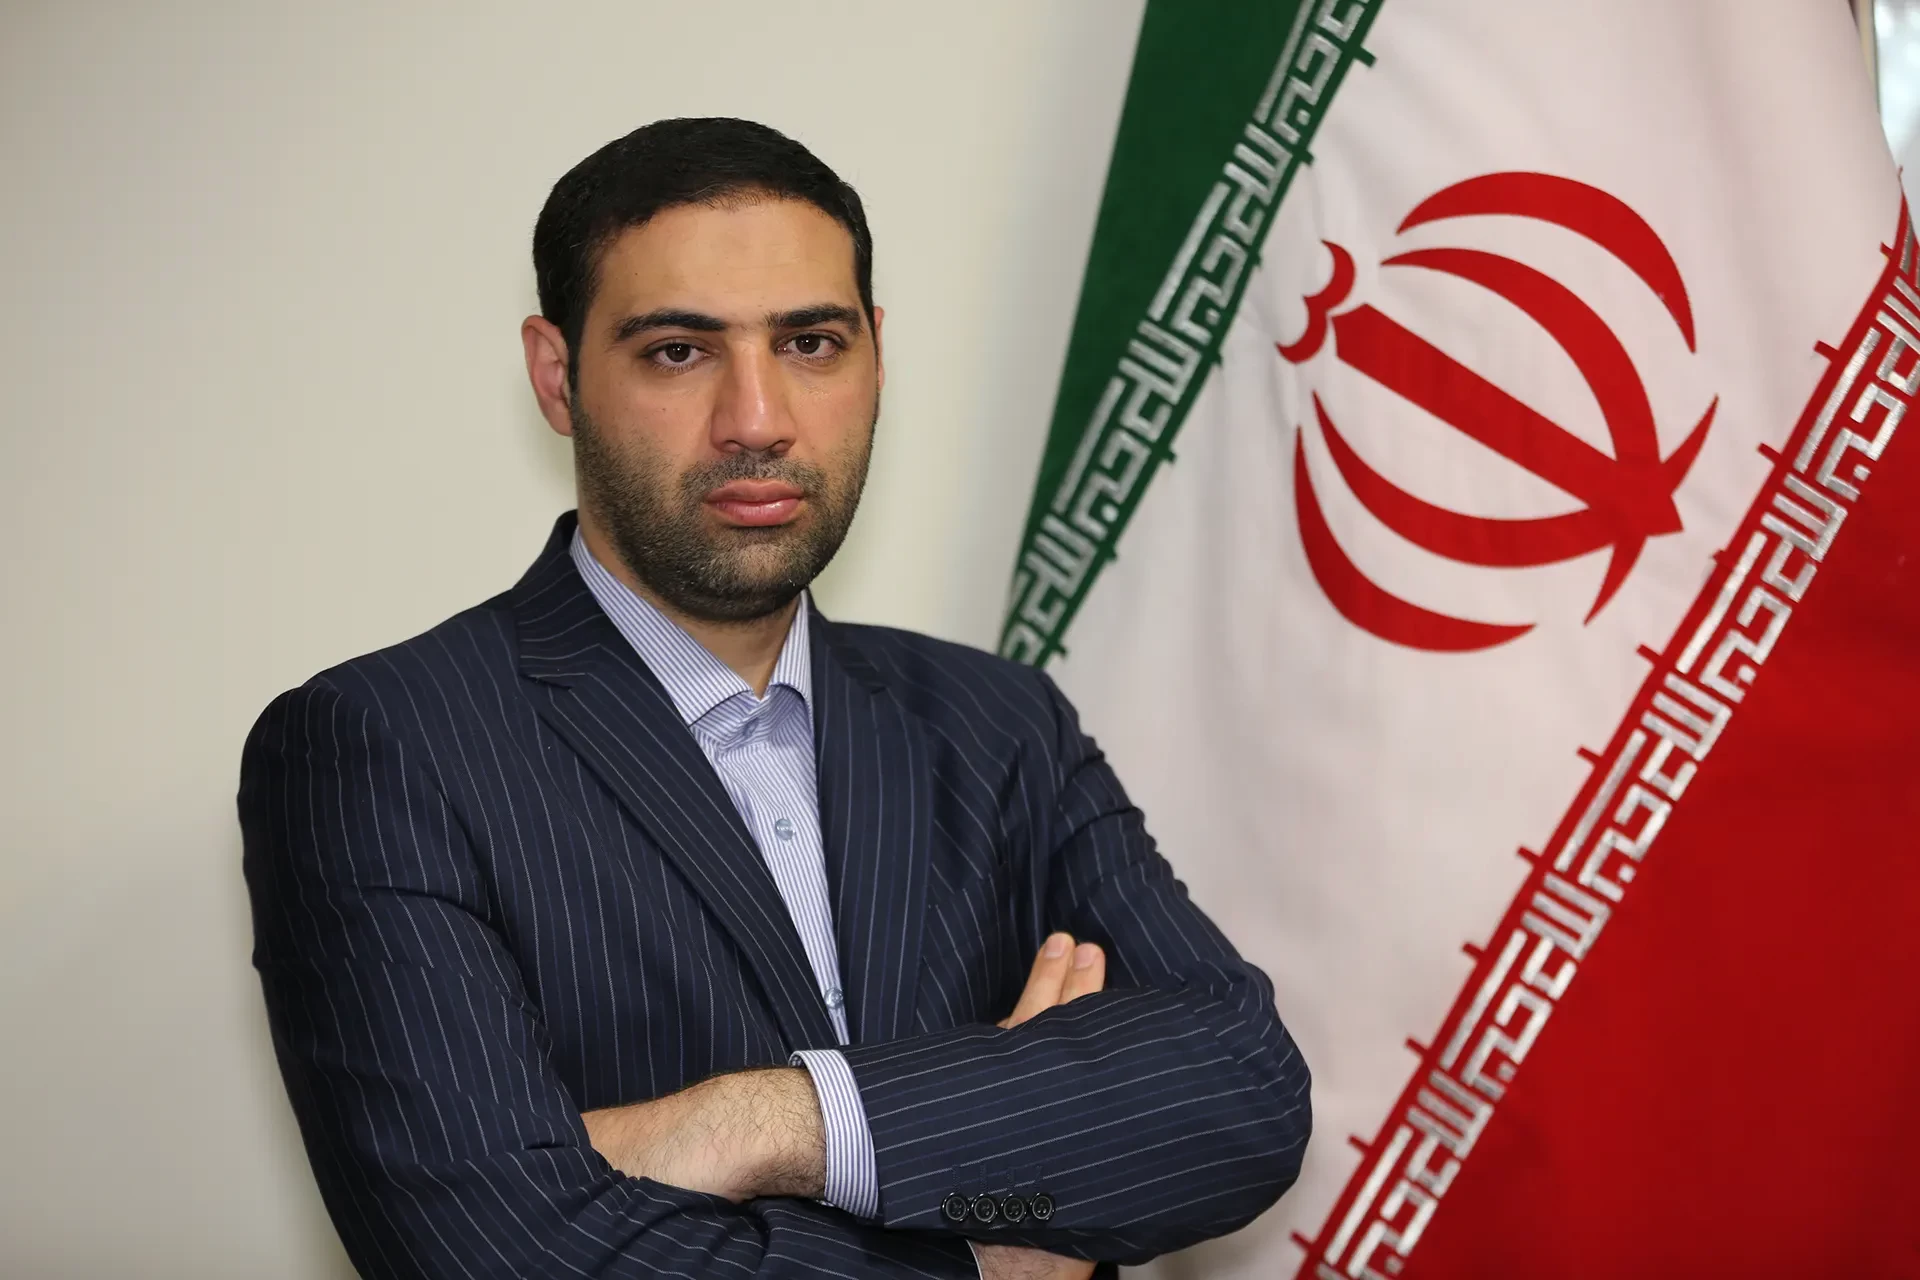 Dr. Mohsen Tabatabaei Mozd Abadi